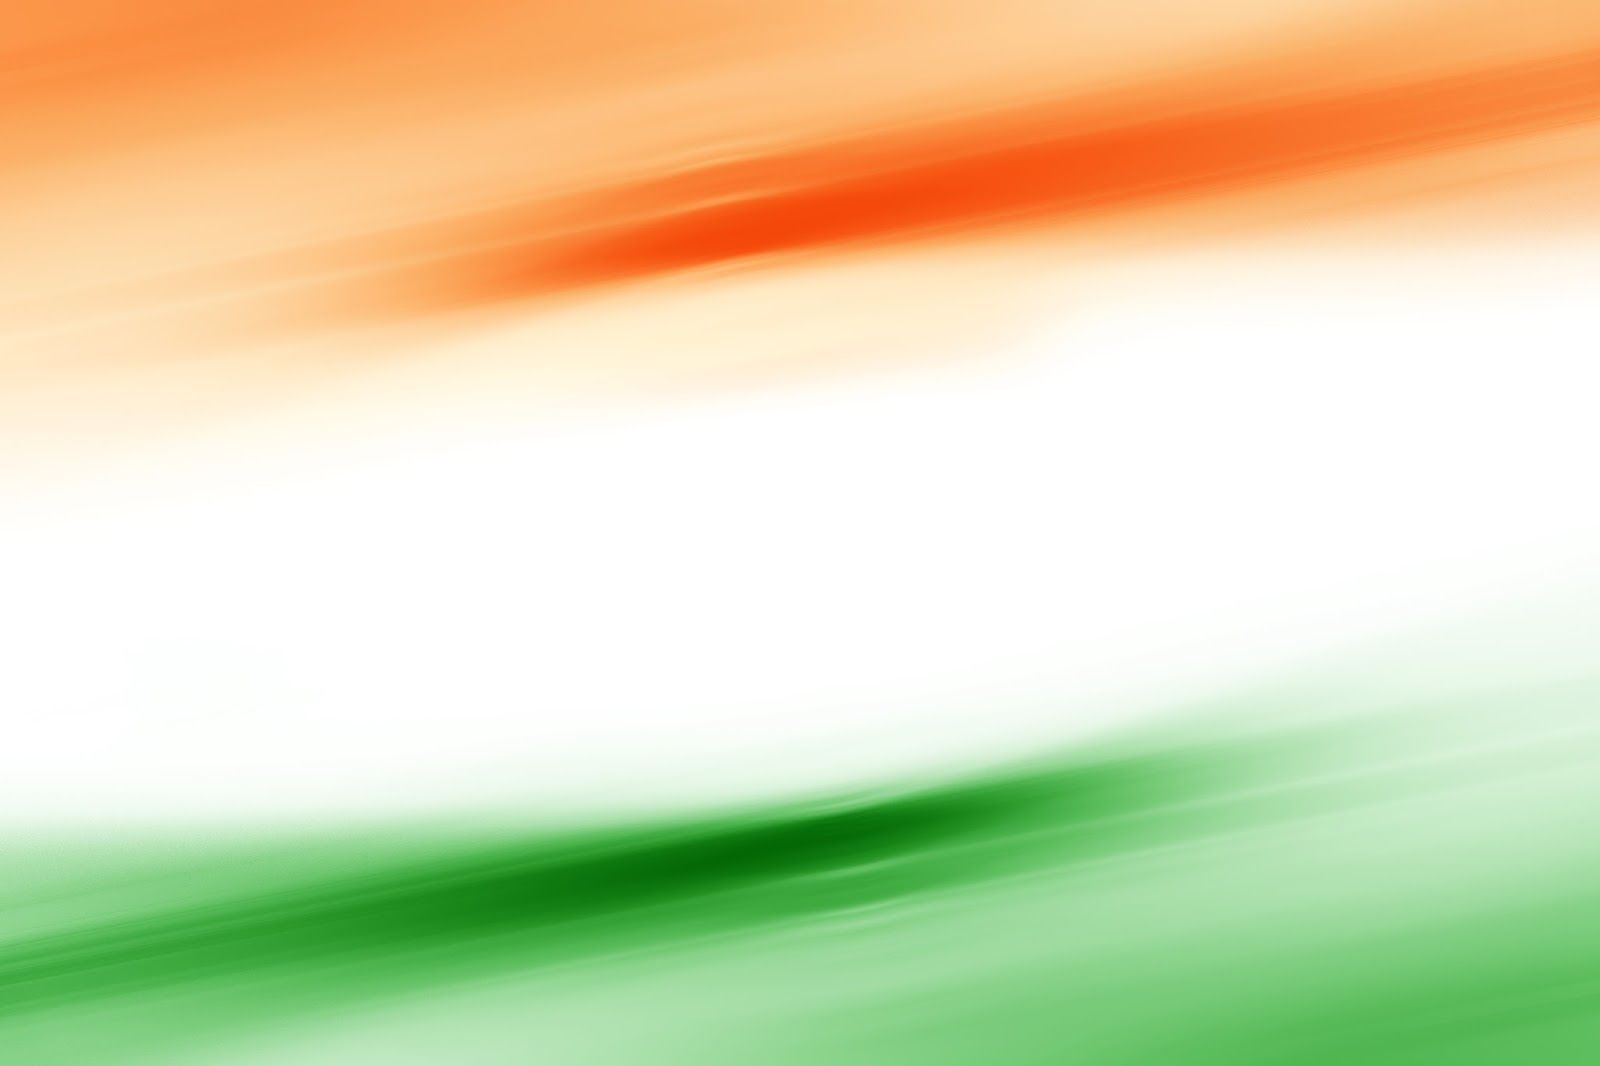 Hình nền Tiranga - Những gam màu của cờ Ấn Độ trên nền đỏ, trắng, xanh tươi sẽ đem đến sự tự hào và hào nhoáng cho điện thoại của bạn. Nếu bạn yêu màu sắc và sự phong phú của nền văn hoá Ấn Độ, hãy tải ngay hình nền Tiranga để đắm chìm trong khoảnh khắc đầy ấn tượng và tình cảm.